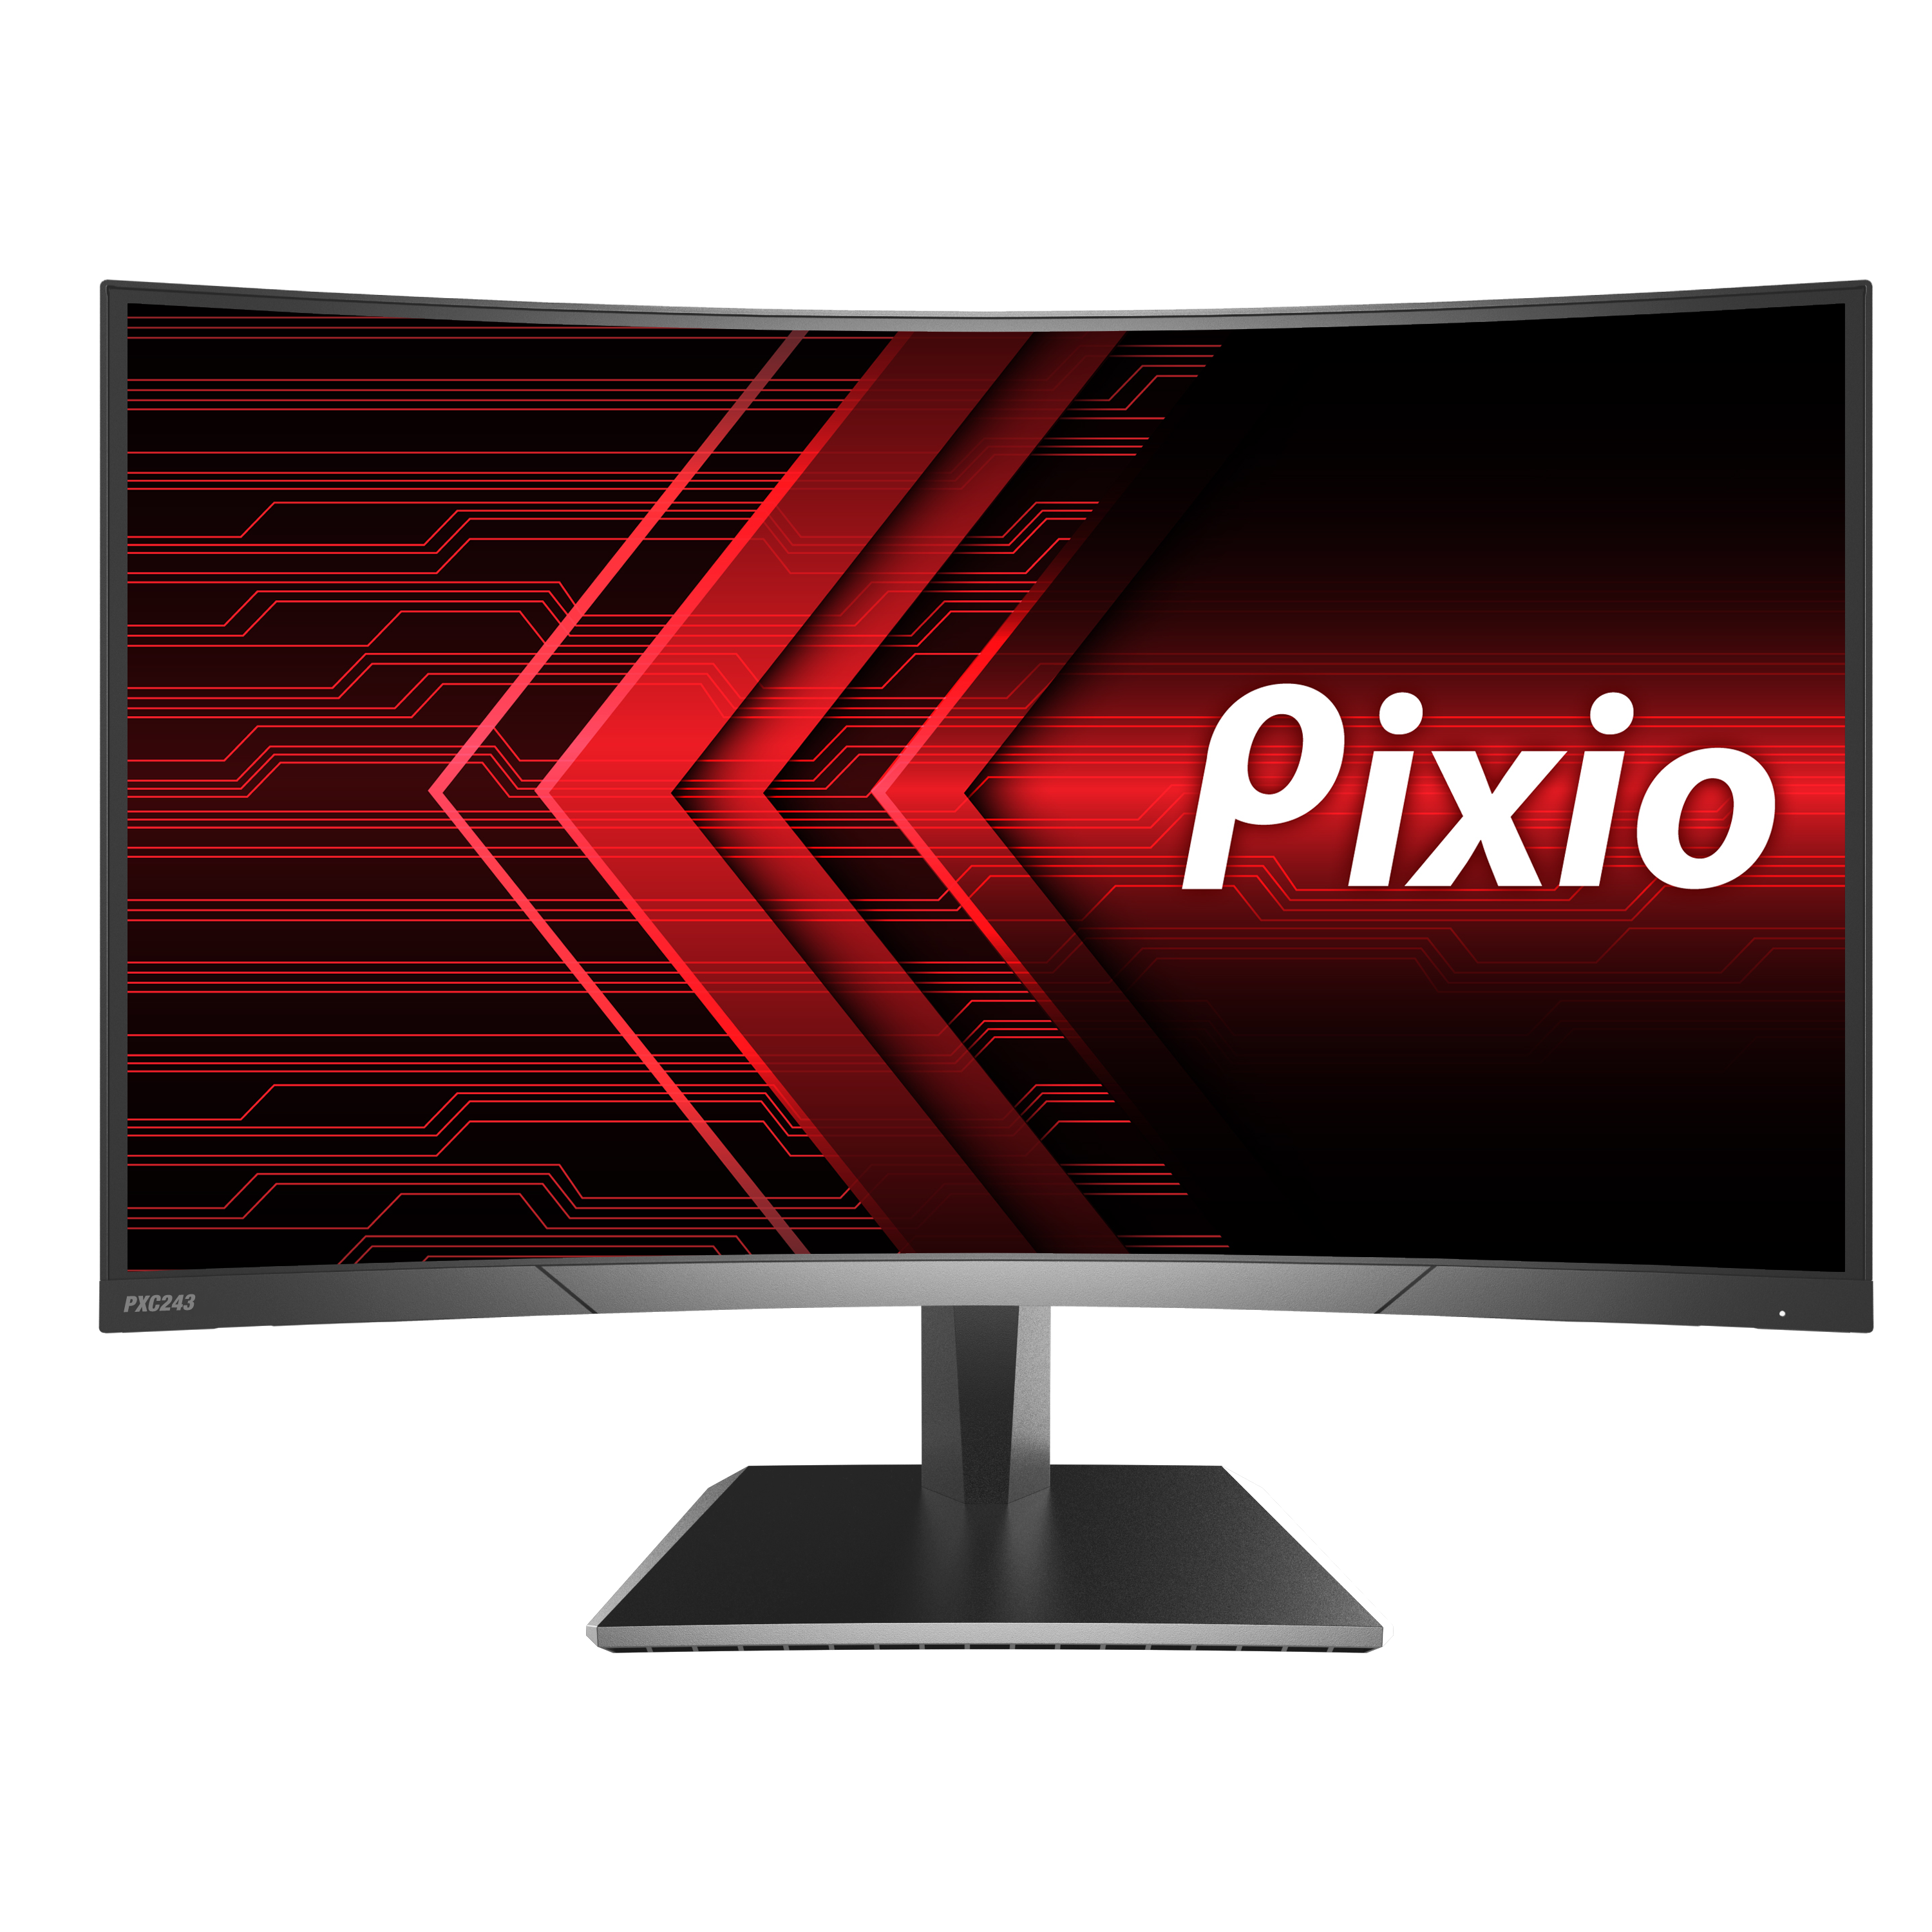 Pixio Pxc243 24 Inch 1080p 144hz 1800r Curved Va Gaming Monitor